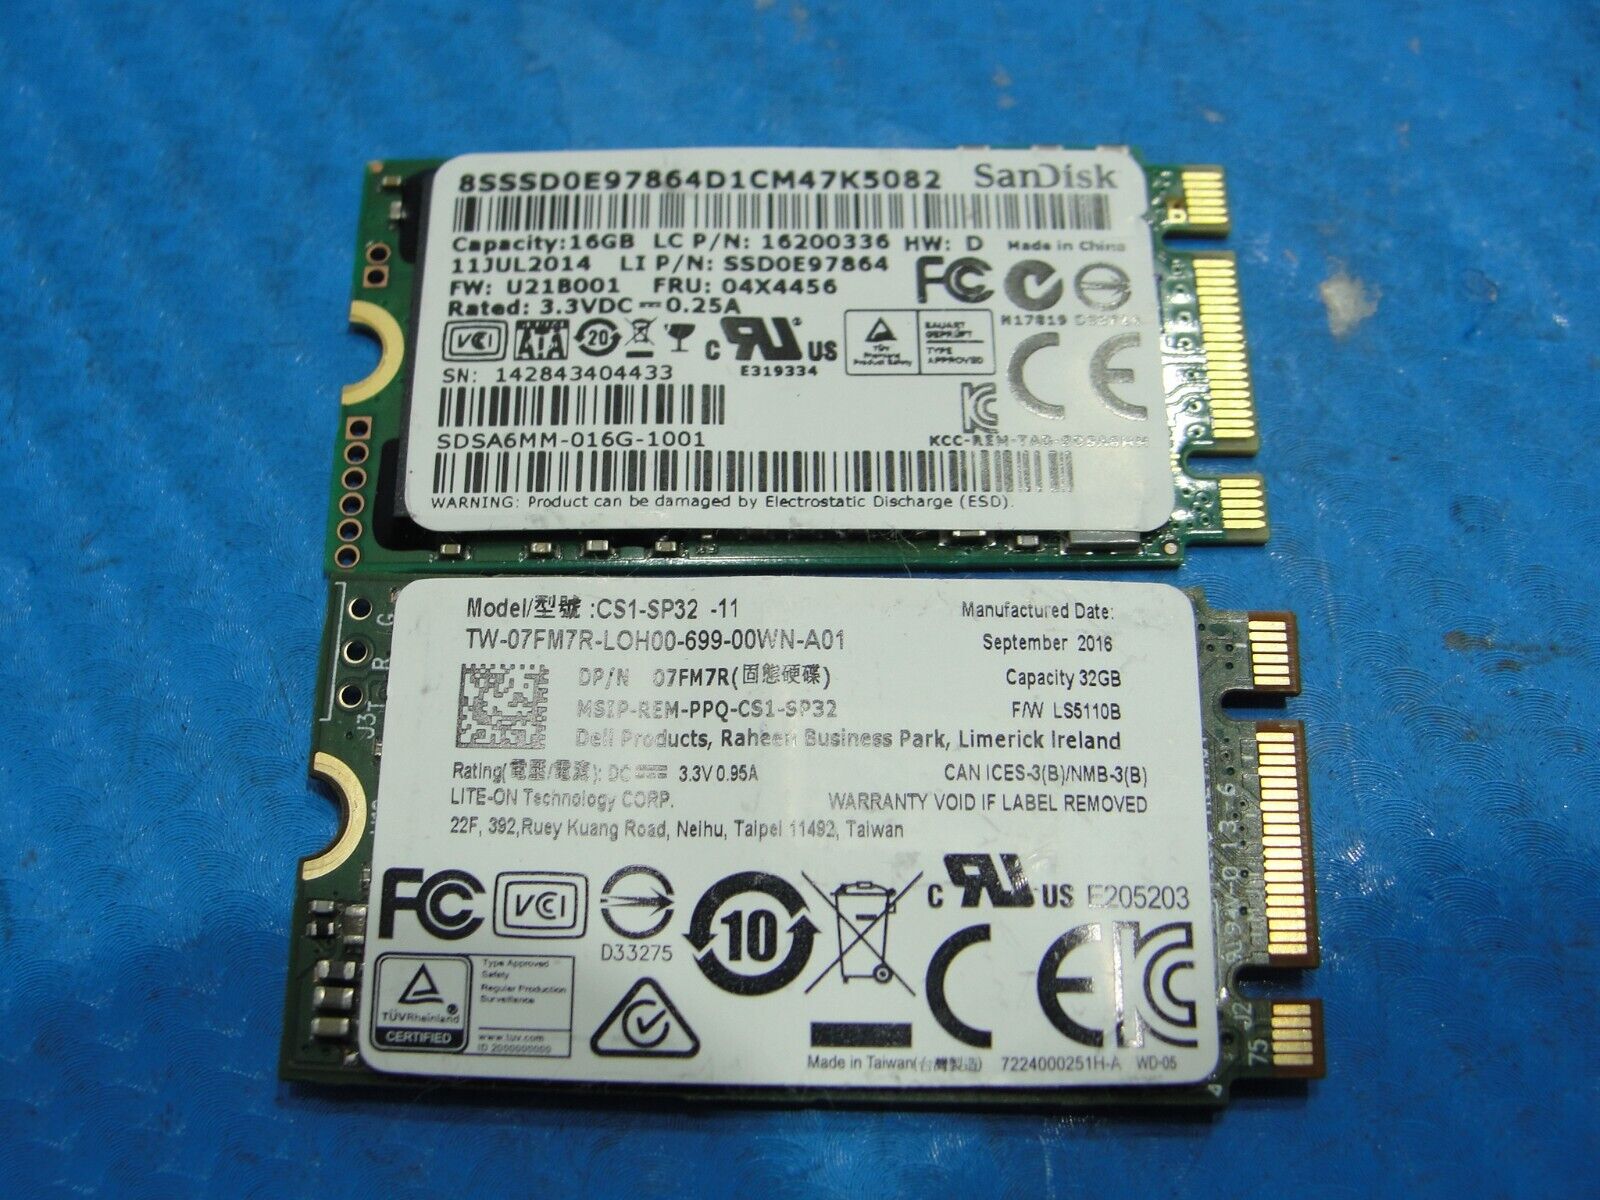 Lot of 2x SSD Solid State Drive 16Gb 32Gb cs1-sp32-11 sdsa6mm-016g-1001 SameSpec